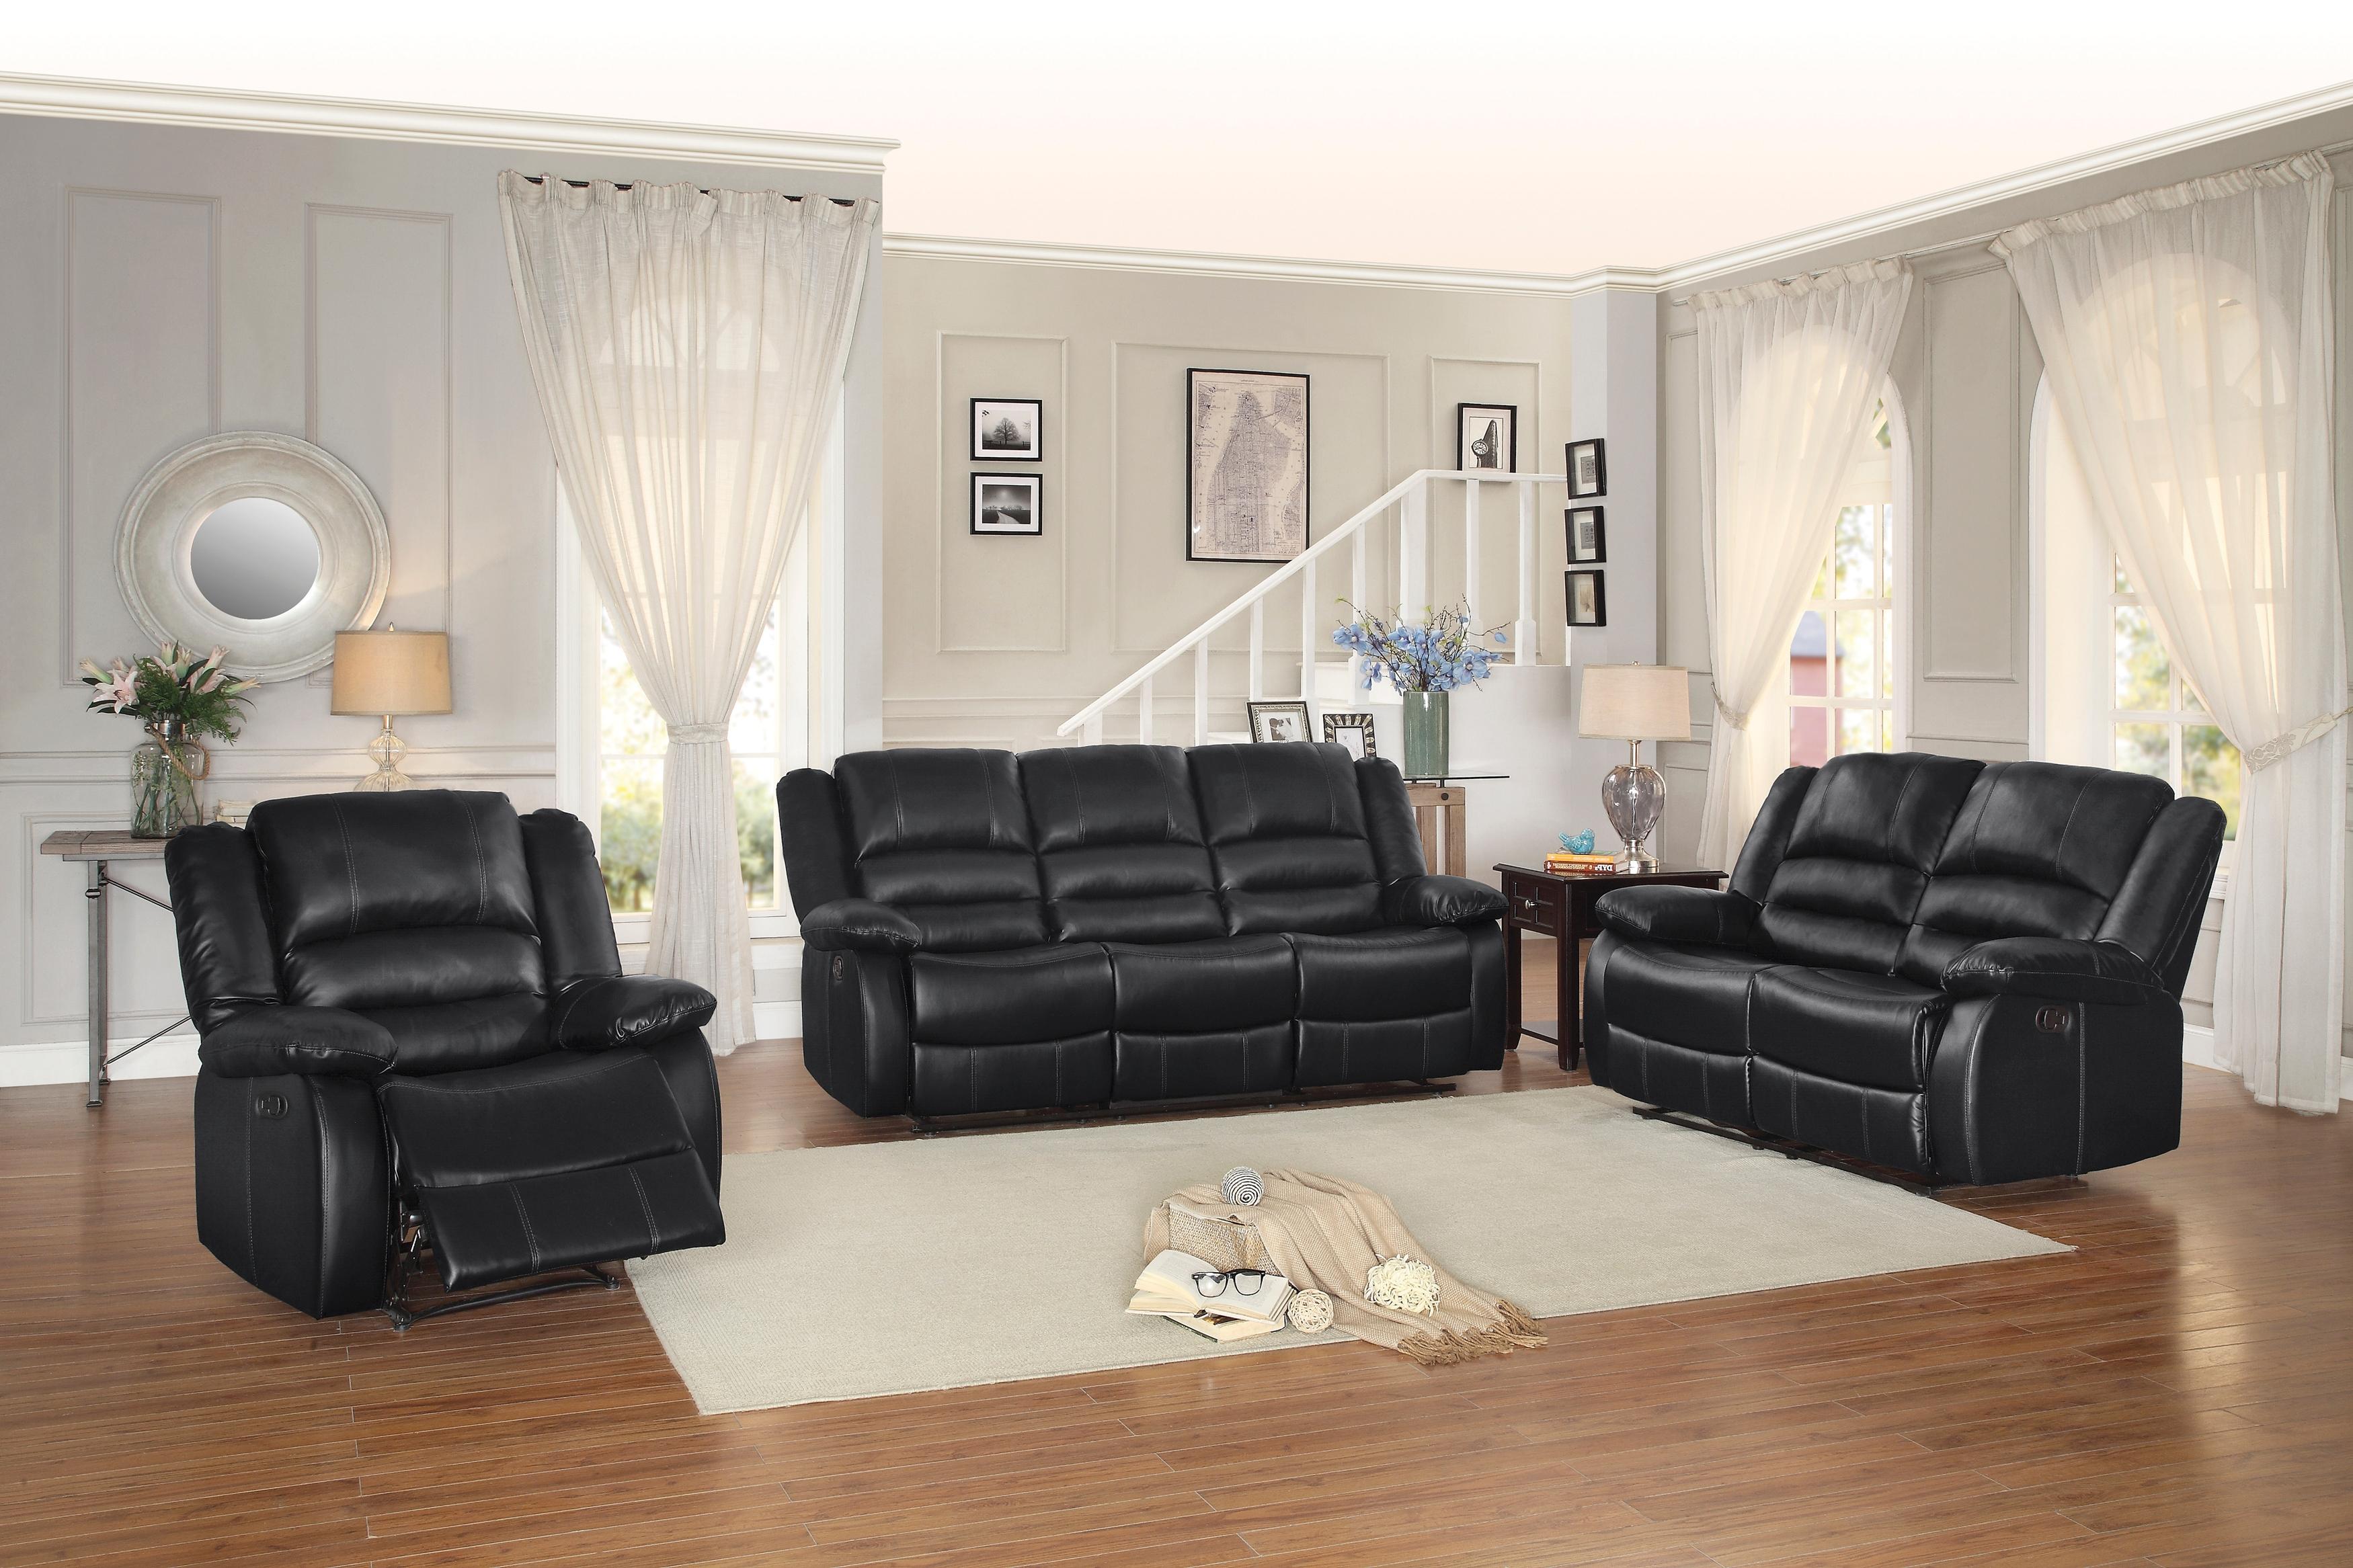 

    
Transitional Black Solid Wood Recliner Sofa Set 3PCS Homelegance Jarita 8329BLK-3-3PCS
